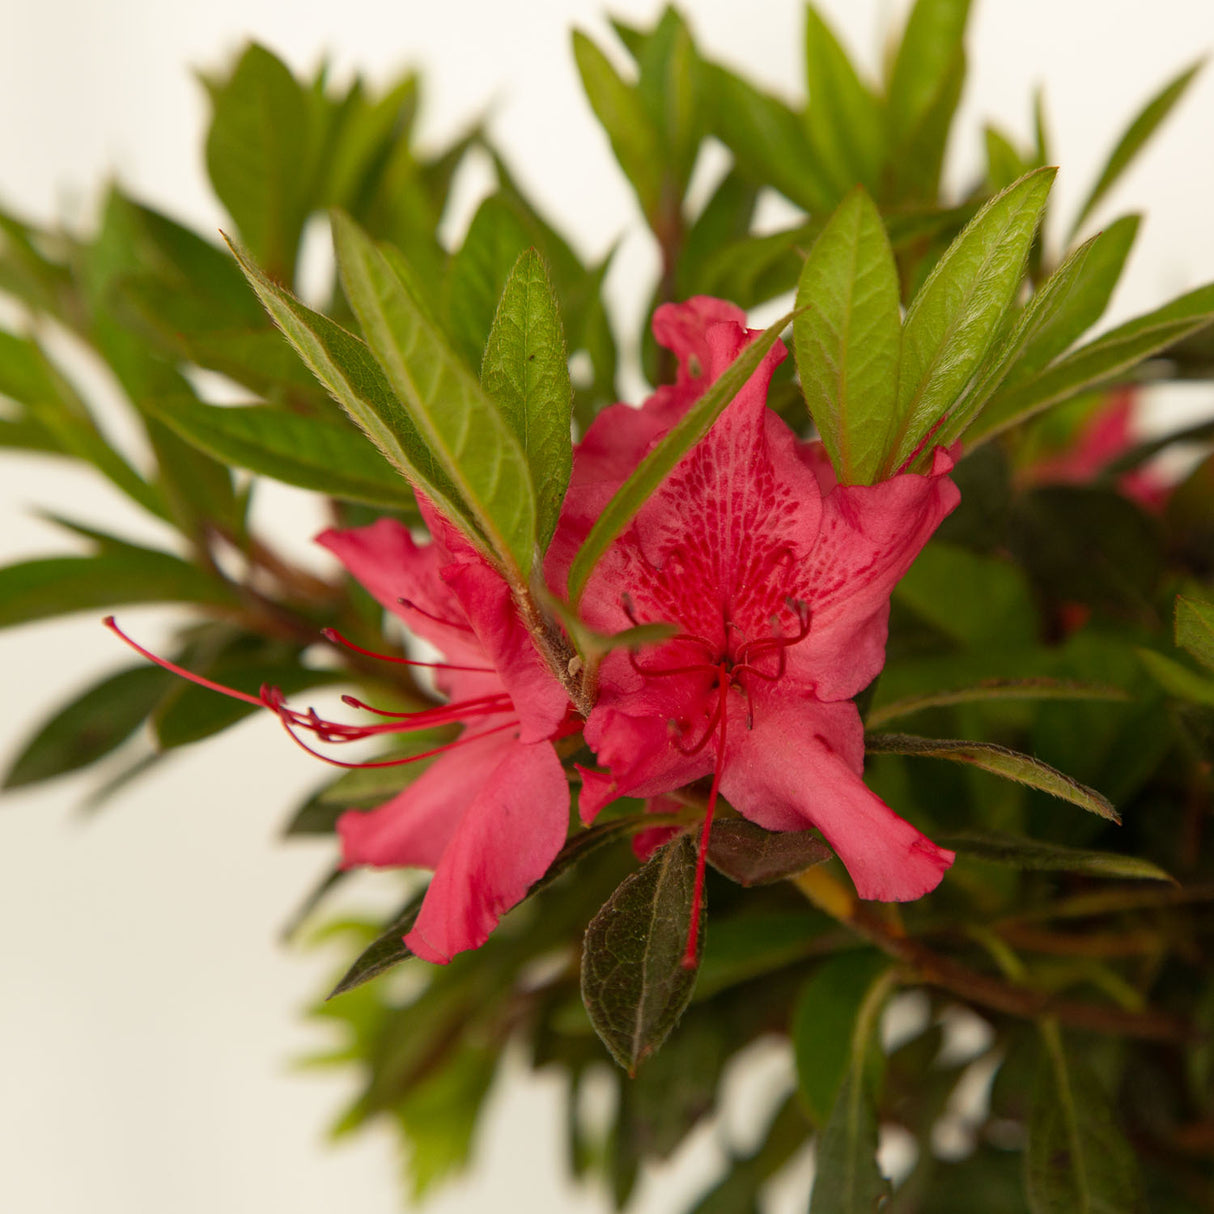 encore azaleas for sale online pink flower blooms